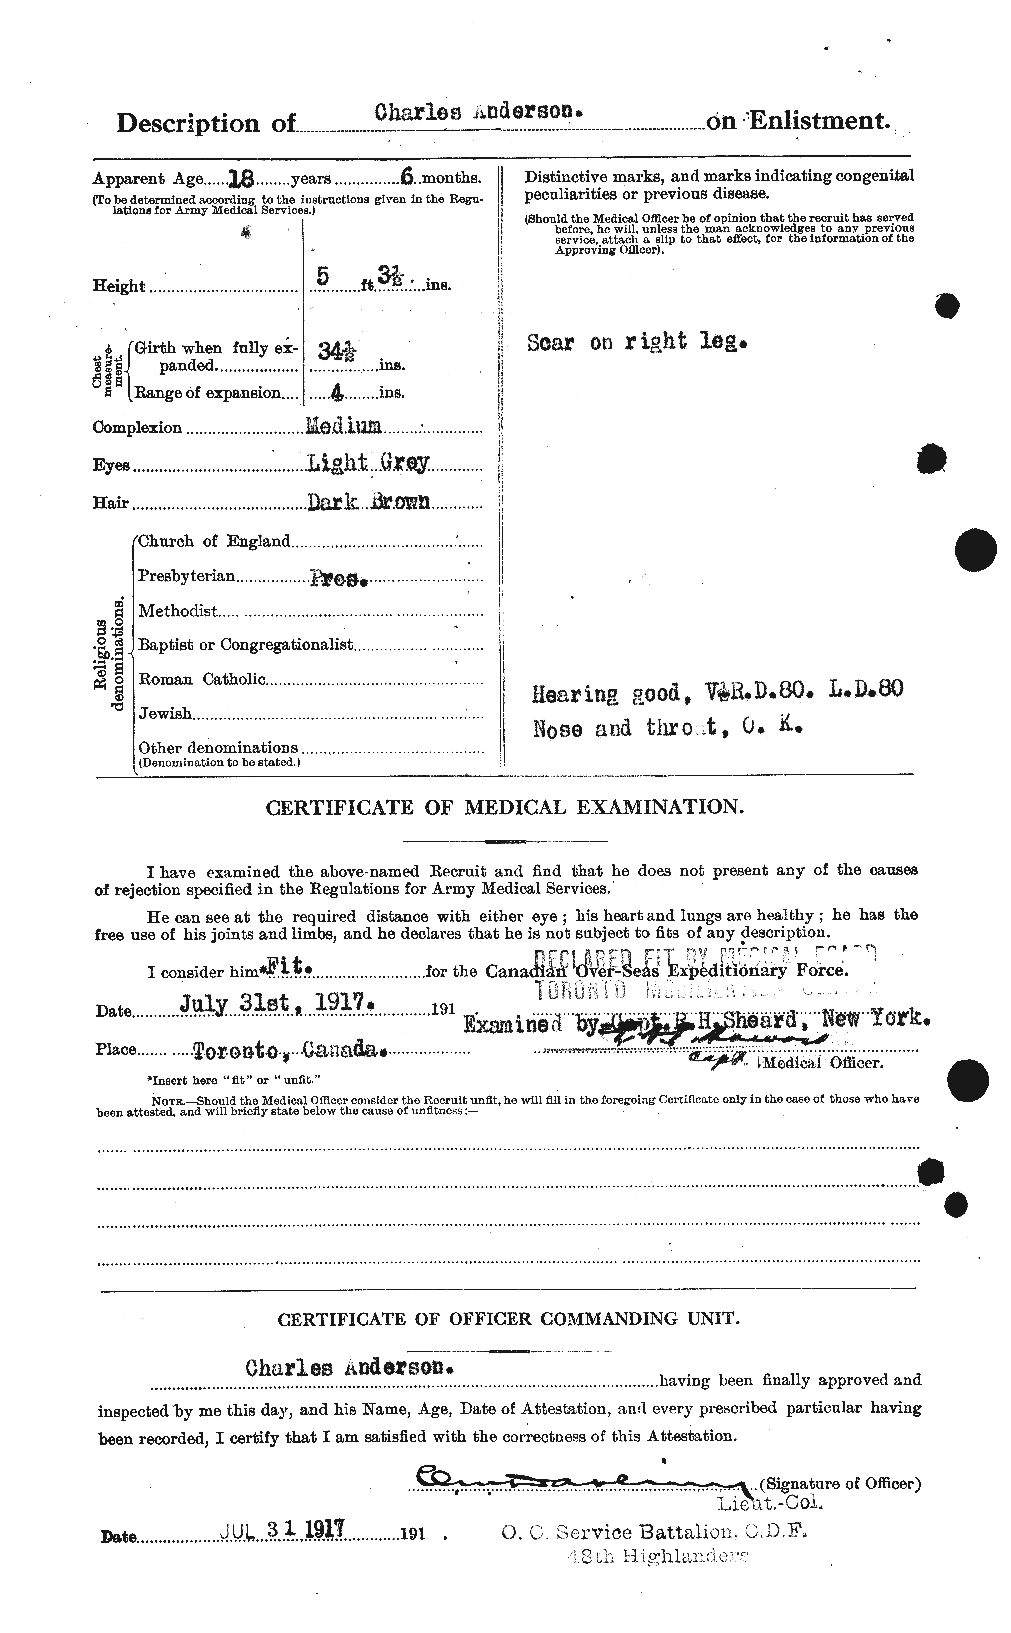 Dossiers du Personnel de la Première Guerre mondiale - CEC 209264b